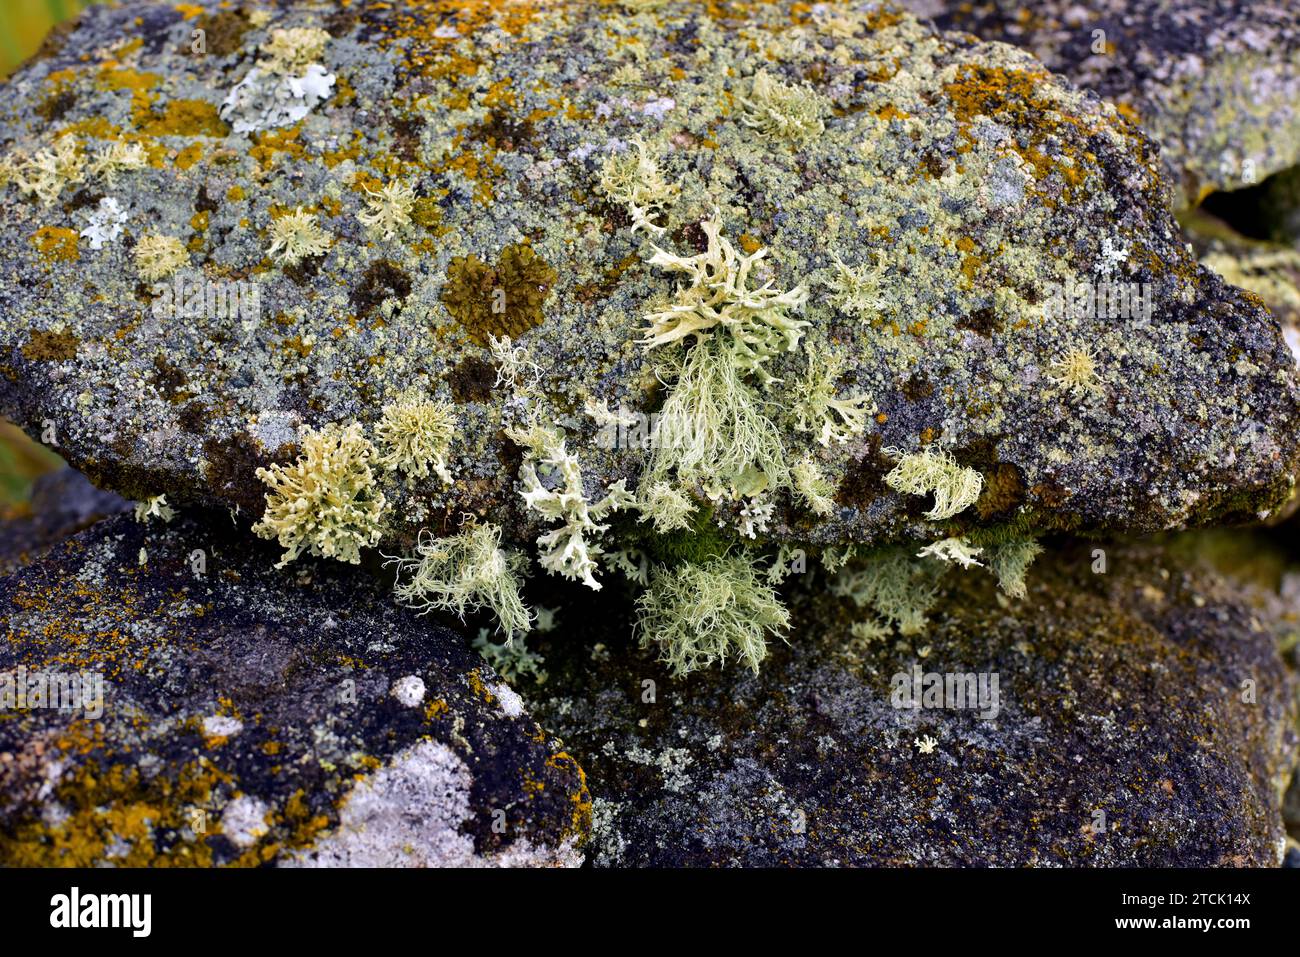 Crustose, foliose and fruticose lichens on a granite rock. This photo was taken in Arribes del Duero Natural Park, Zamora province, Castilla-Leon, Spa Stock Photo